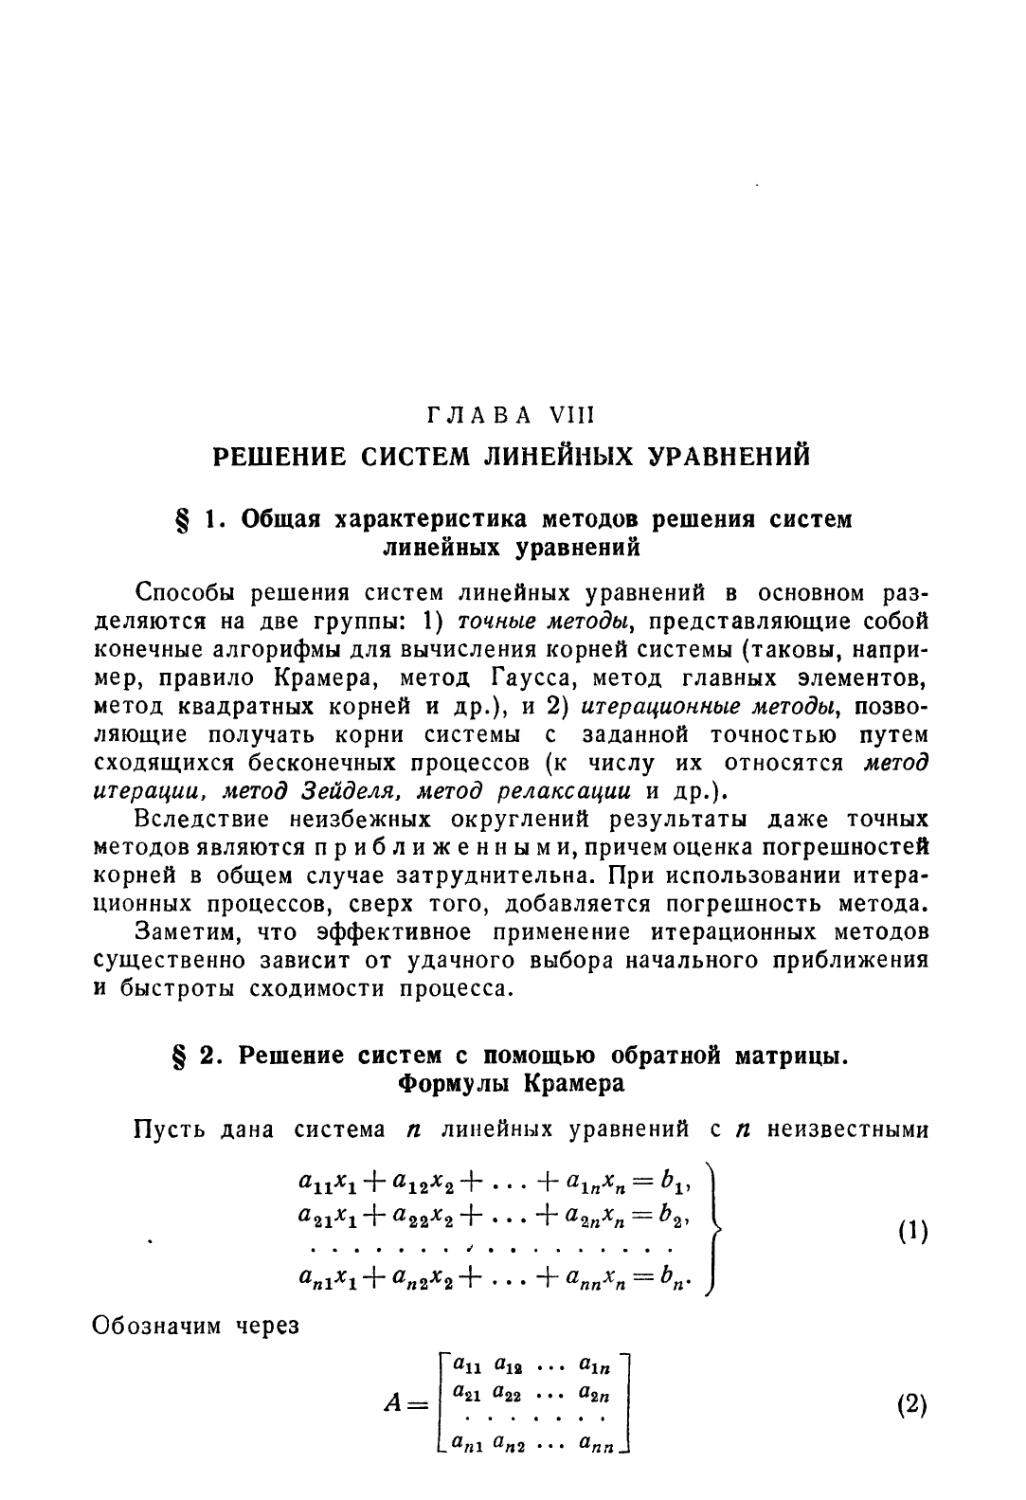 Глава VIII. Решение систем линейных уравнений
§ 2. Решение систем с помощью обратной матрицы. Формулы Крамера